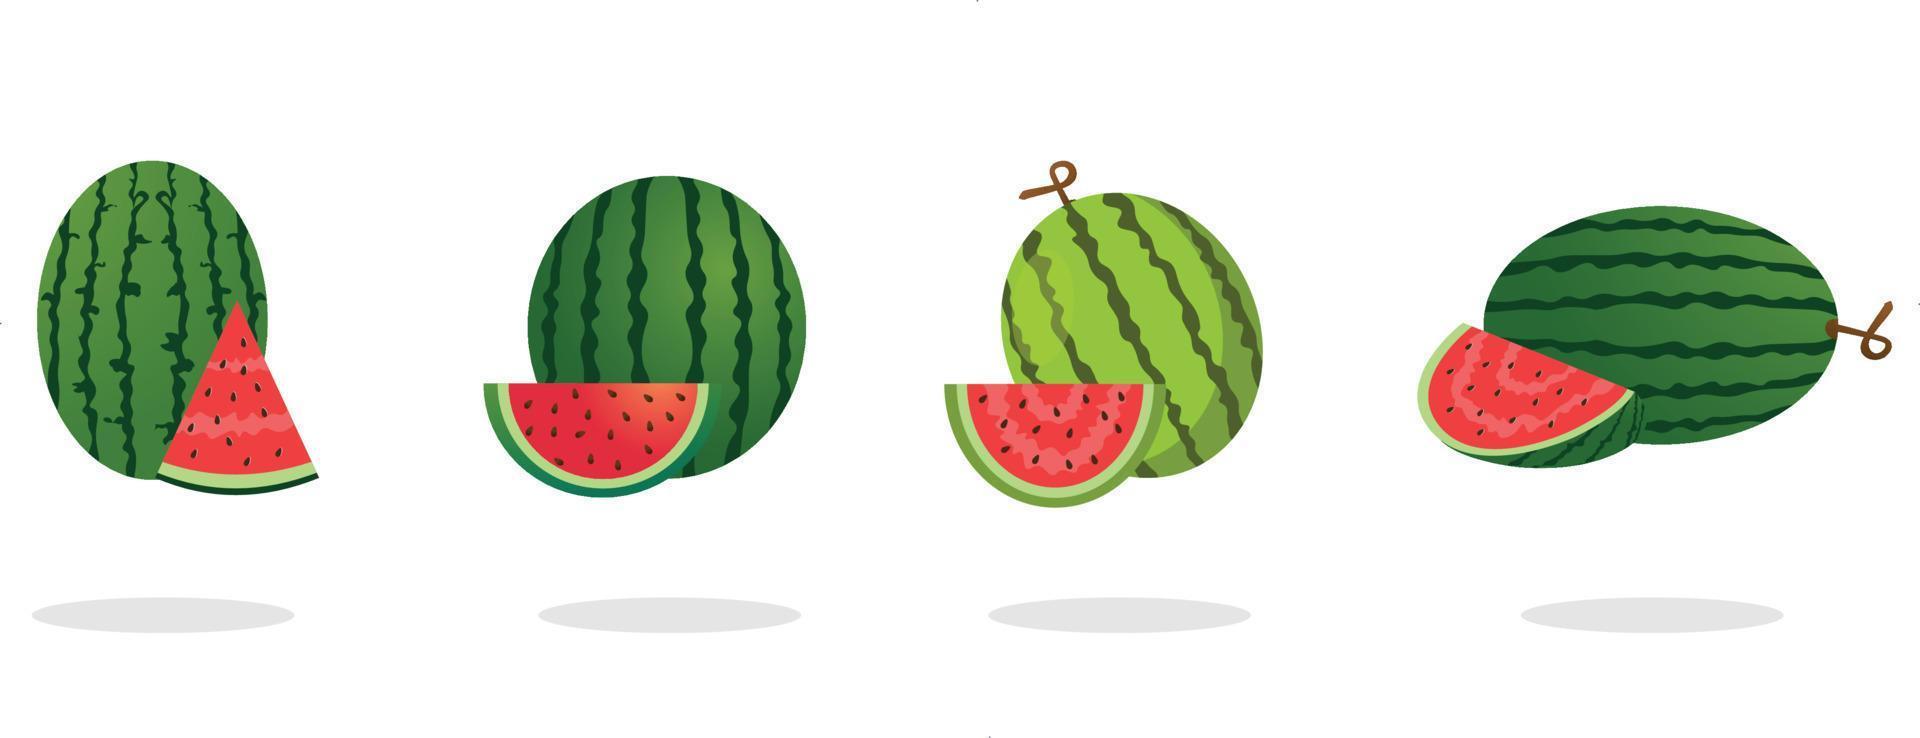 vector illustratie watermeloen set, groene stengel, halve gesneden, gesneden. grafische watermeloen symbolen zoet voedsel. tropische watermeloenen op witte achtergrond.